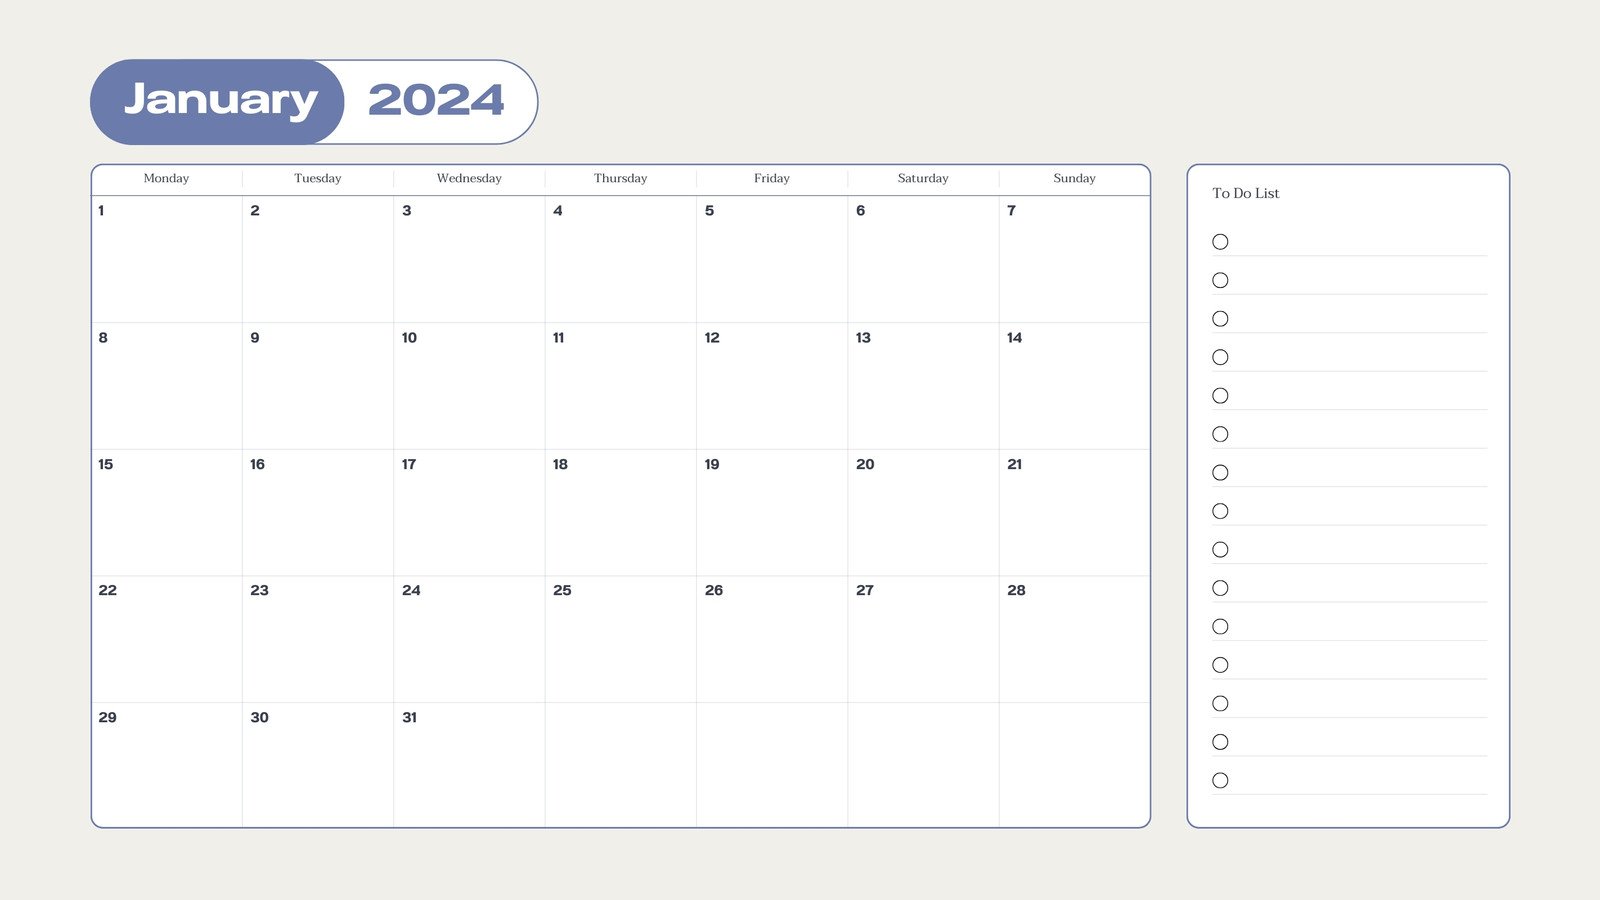 Free Calendar Maker - Create a Custom Calendar in Canva